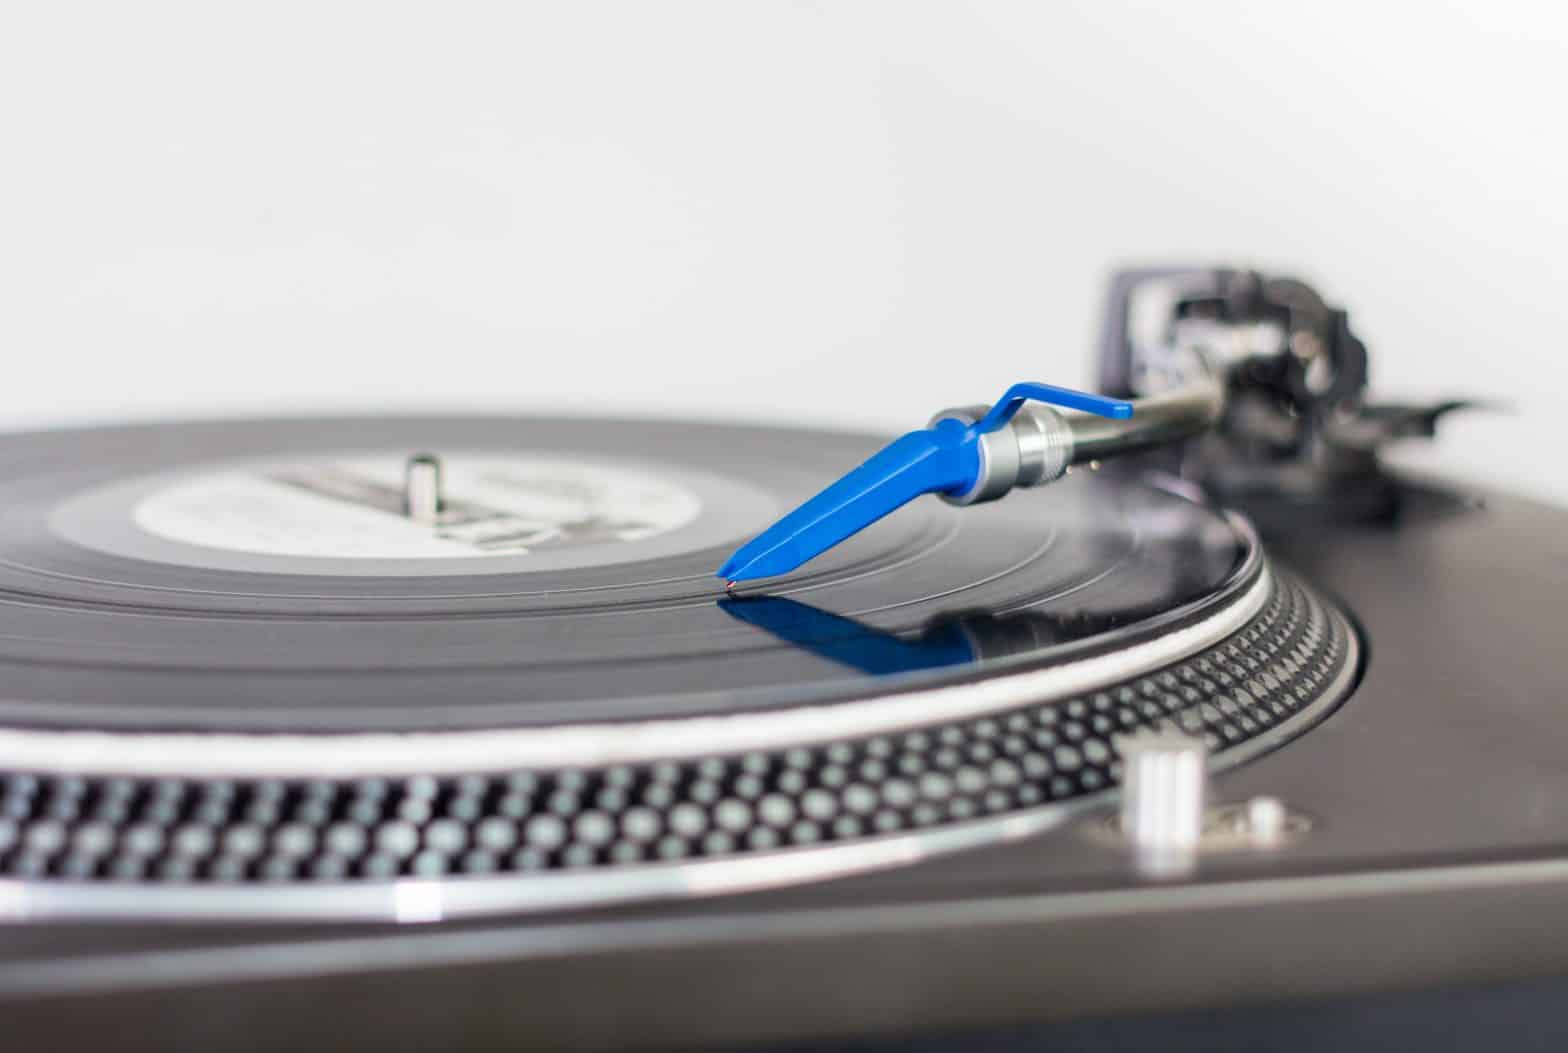 DJ needle on a vinyl record